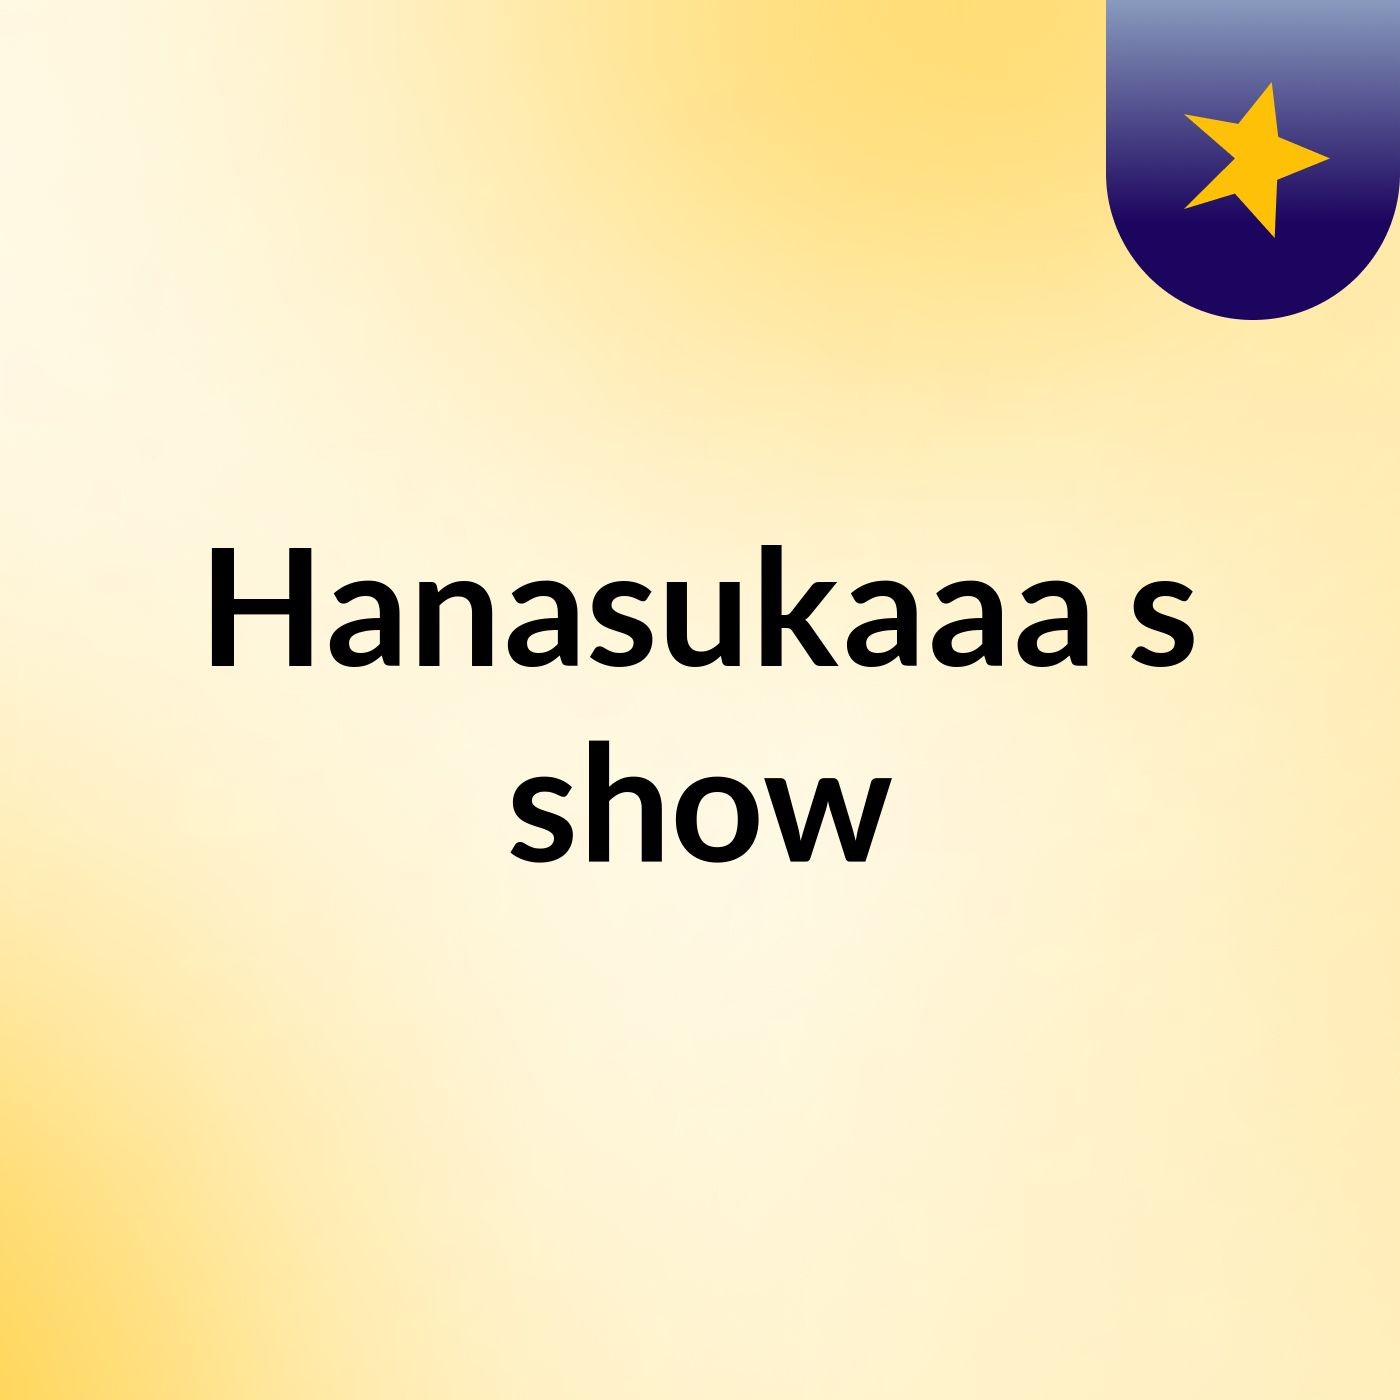 Hanasukaaa's show